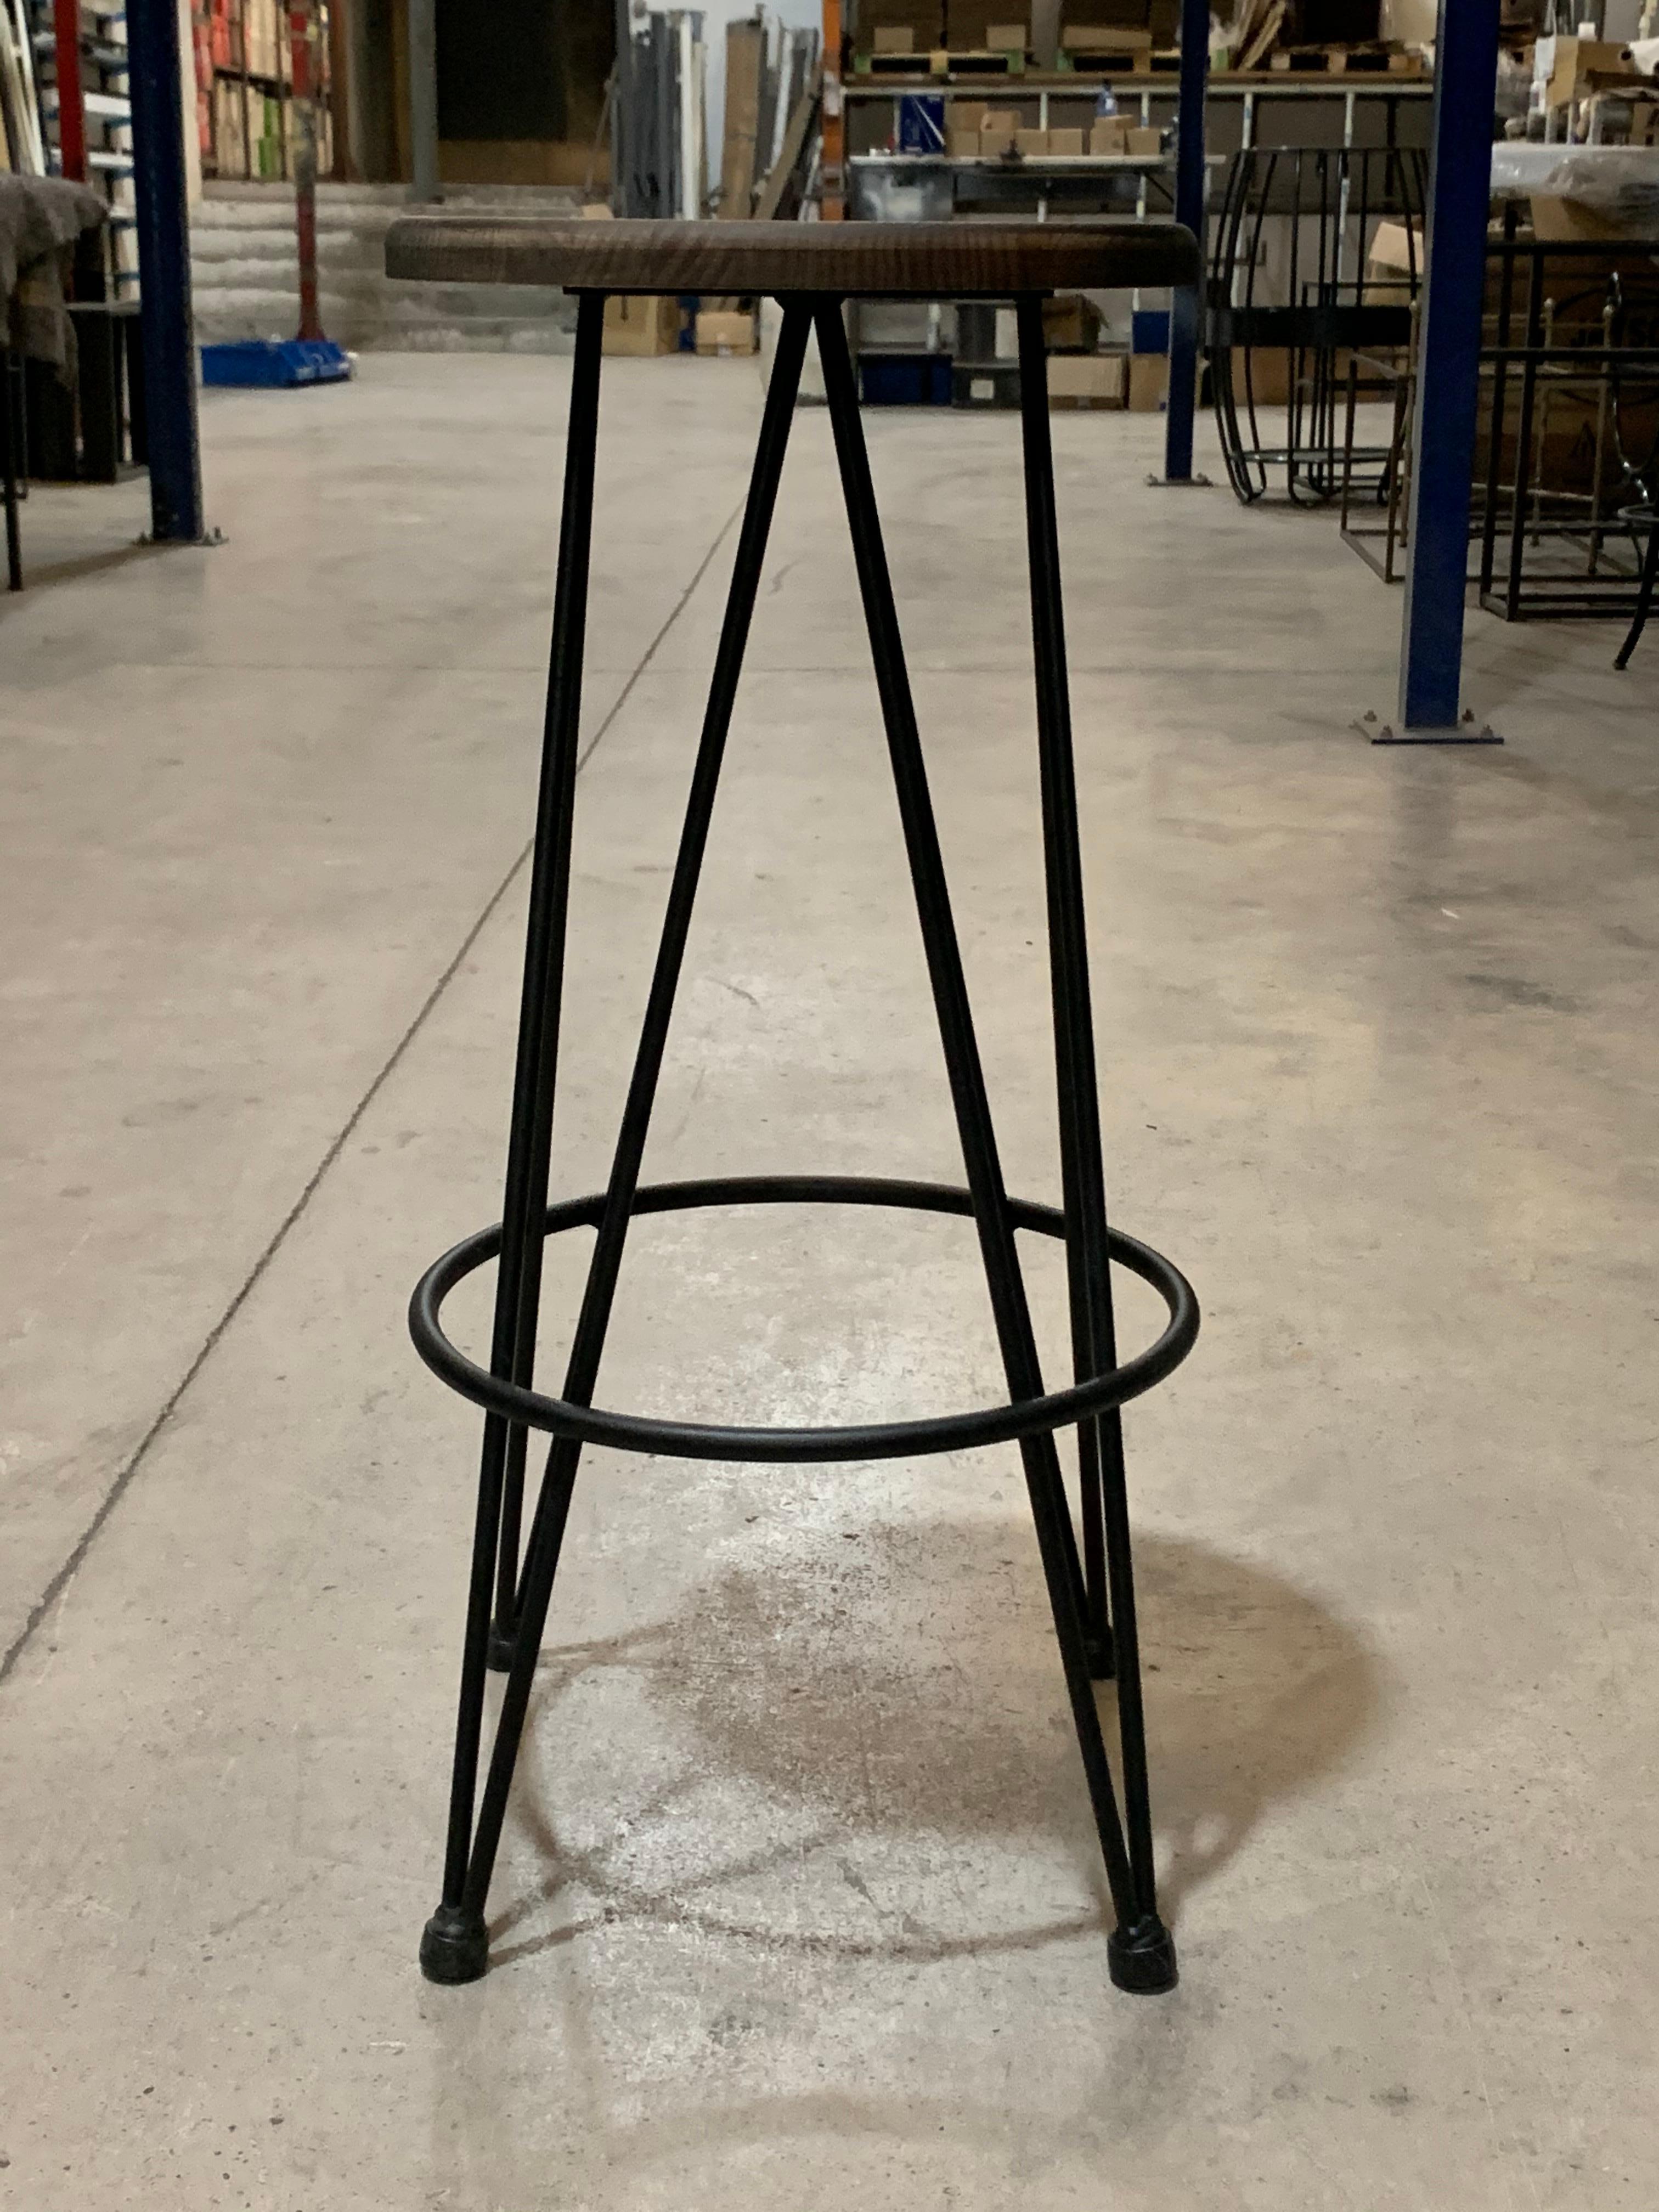 Industriehocker in Thekenhöhe mit schmiedeeisernem Rahmen und Sitz.
Sie können die Maße, die Farben und die Sitzfläche (Holz oder Eisen) selbst bestimmen.
      